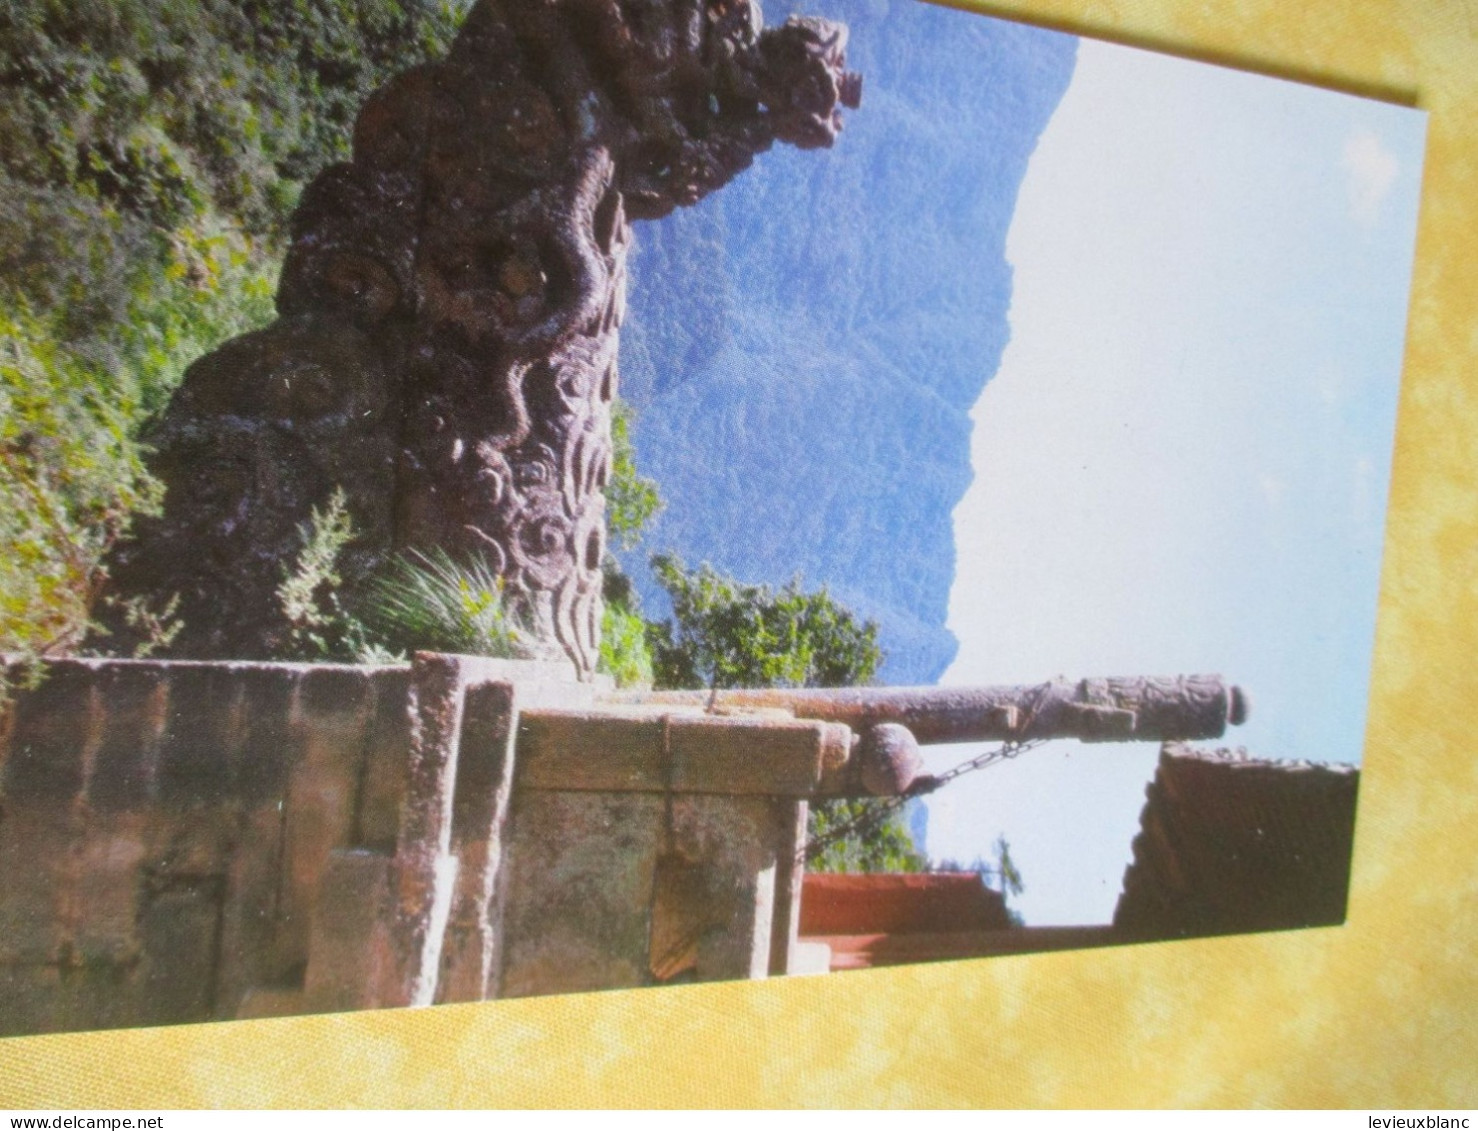 10 cartes postales anciennes/The WUDANG Mountain/ Quin Ling/ République Populaire de Chine / 1981      JAP55